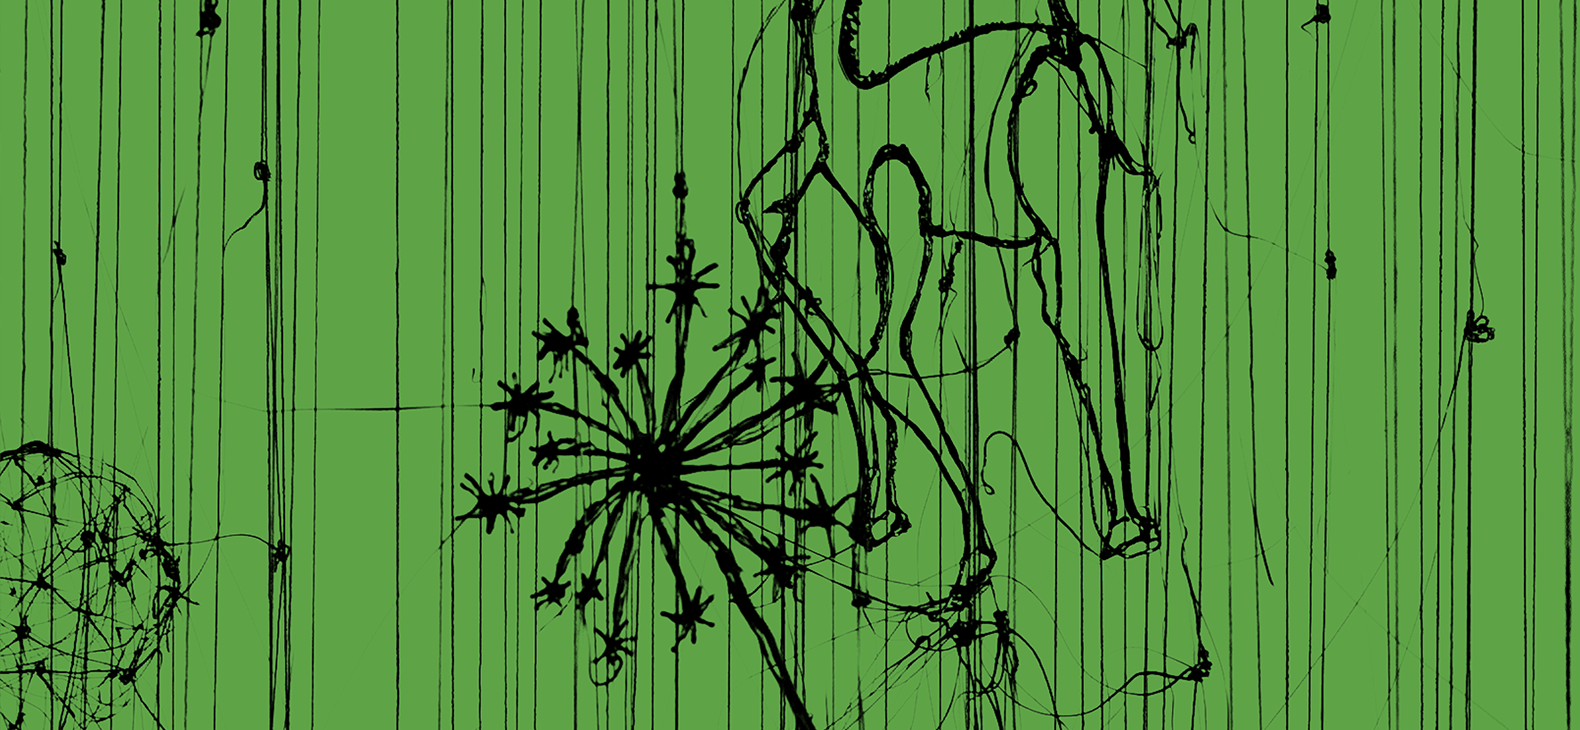 Zipora Rafaelov: Auf den Grund schauen (Ausschnitt) 2021, Foto: Marco Vedana, Bearbeitung: Florian Marschall - Schwarze Grafik auf grünem Hintergrund, Darstellung zwischen abstrakt und figürlich, florale Motive